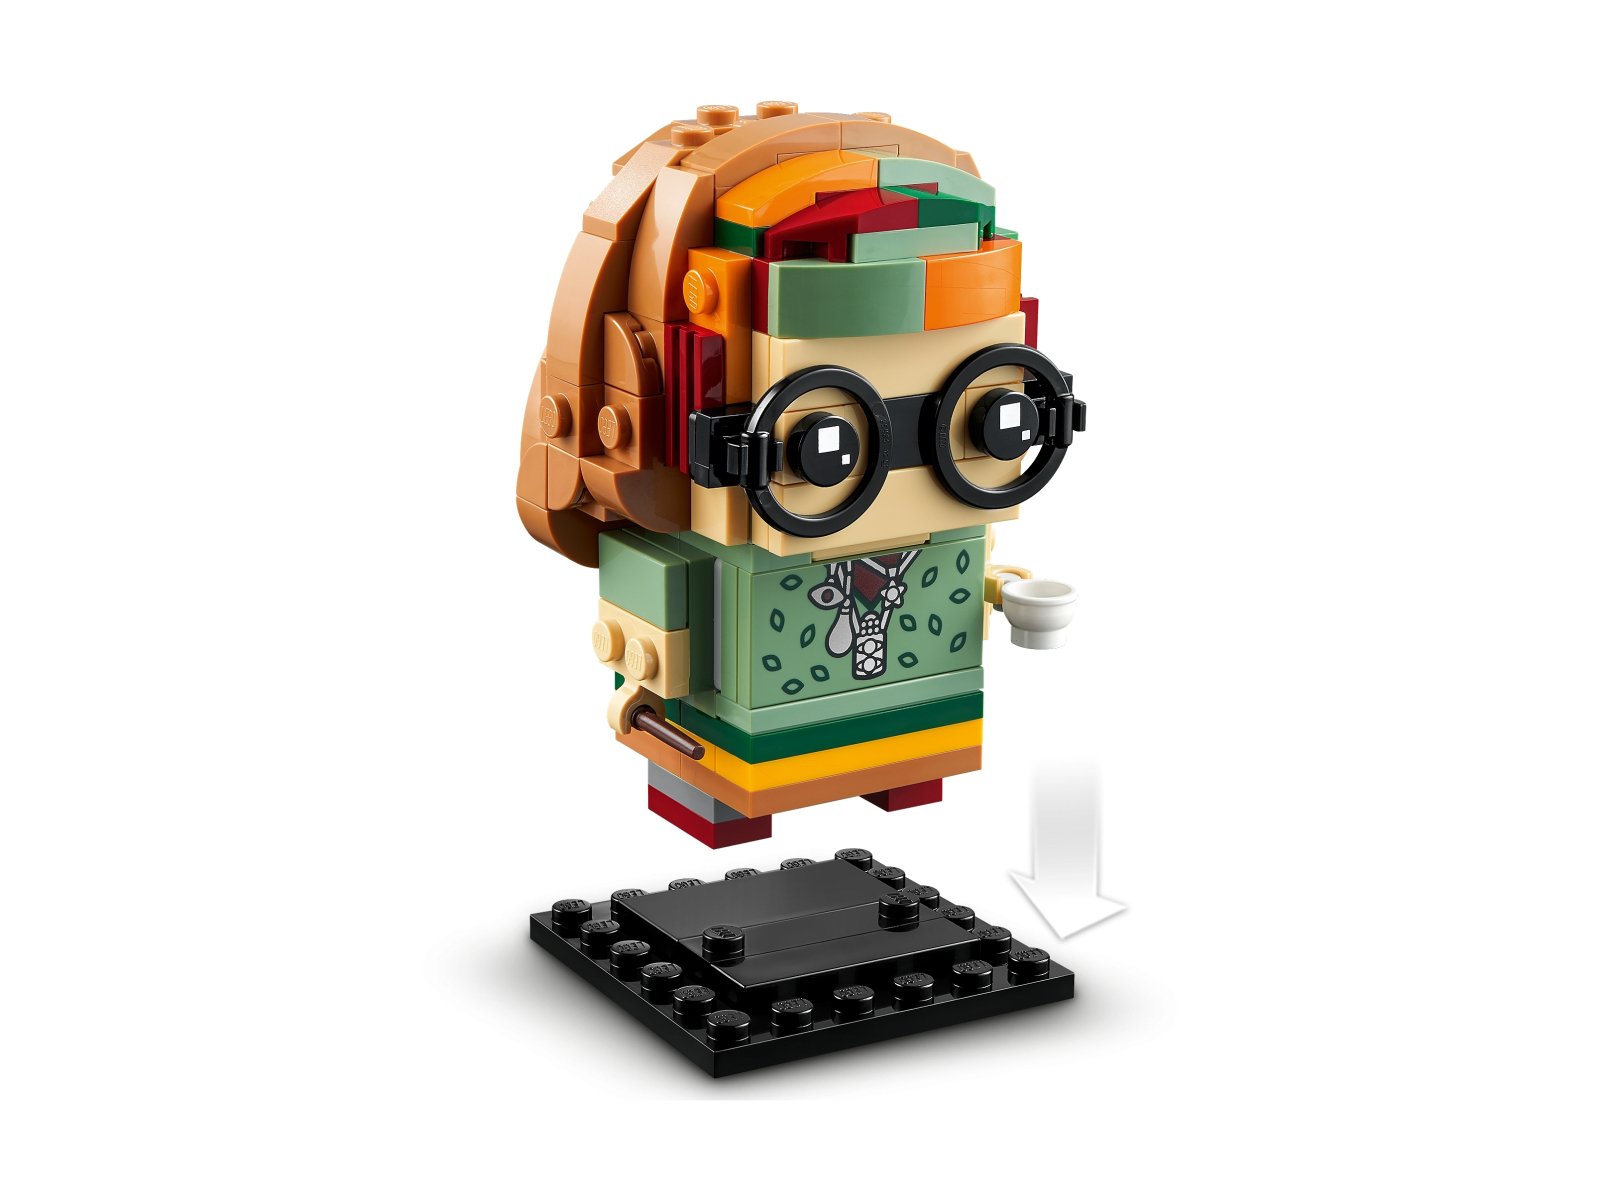 LEGO 40560 BrickHeadz Profesorowie Hogwartu™